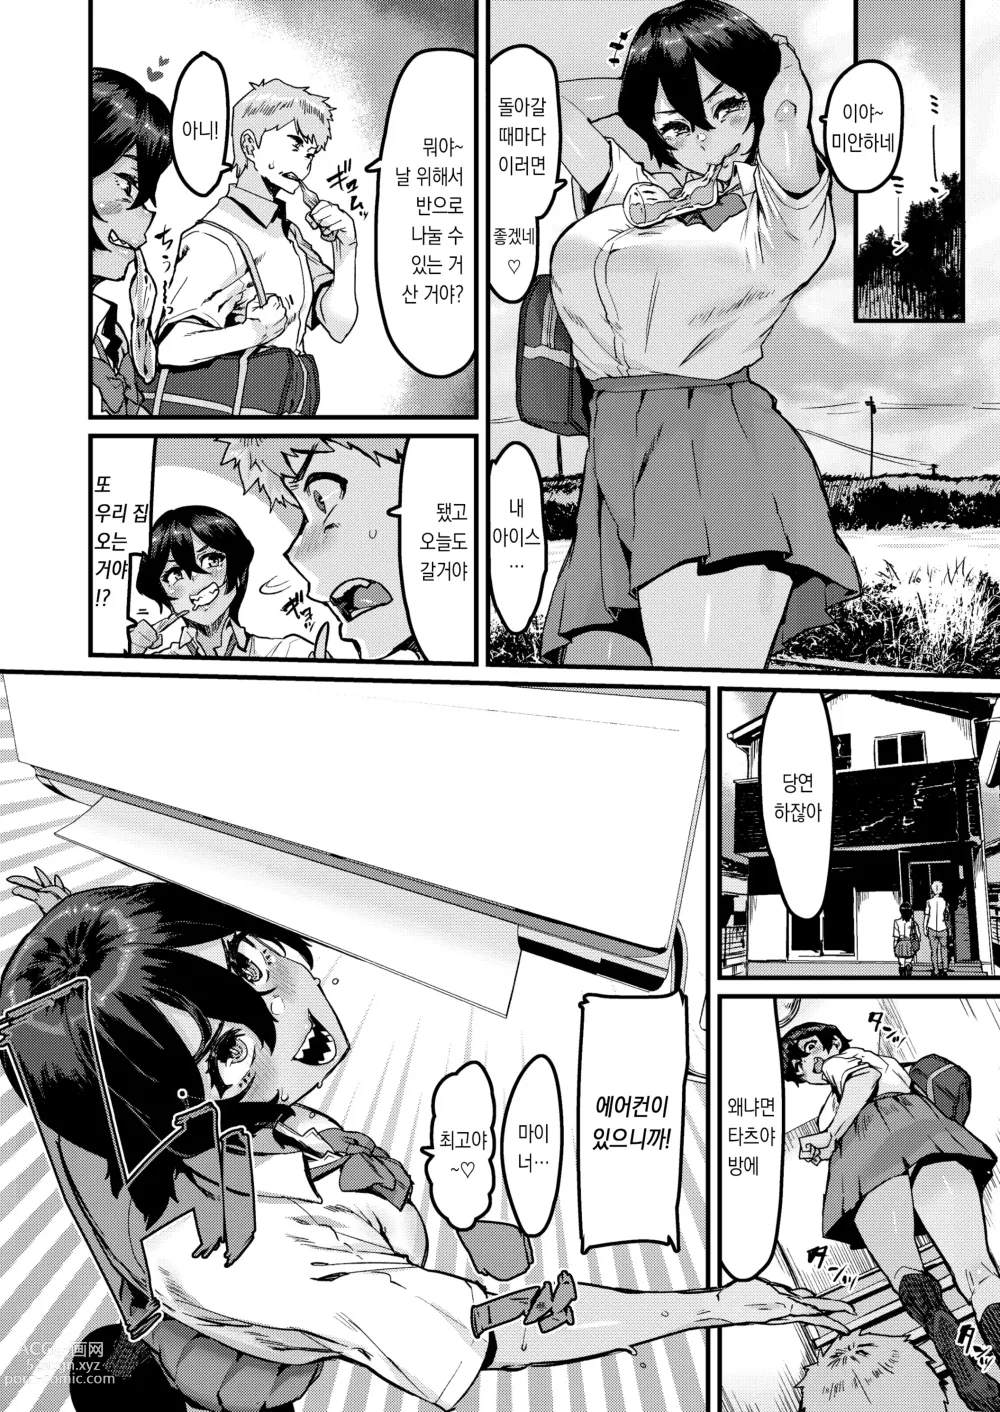 Page 4 of doujinshi 쪽이 계속 전부터 좋아했는데